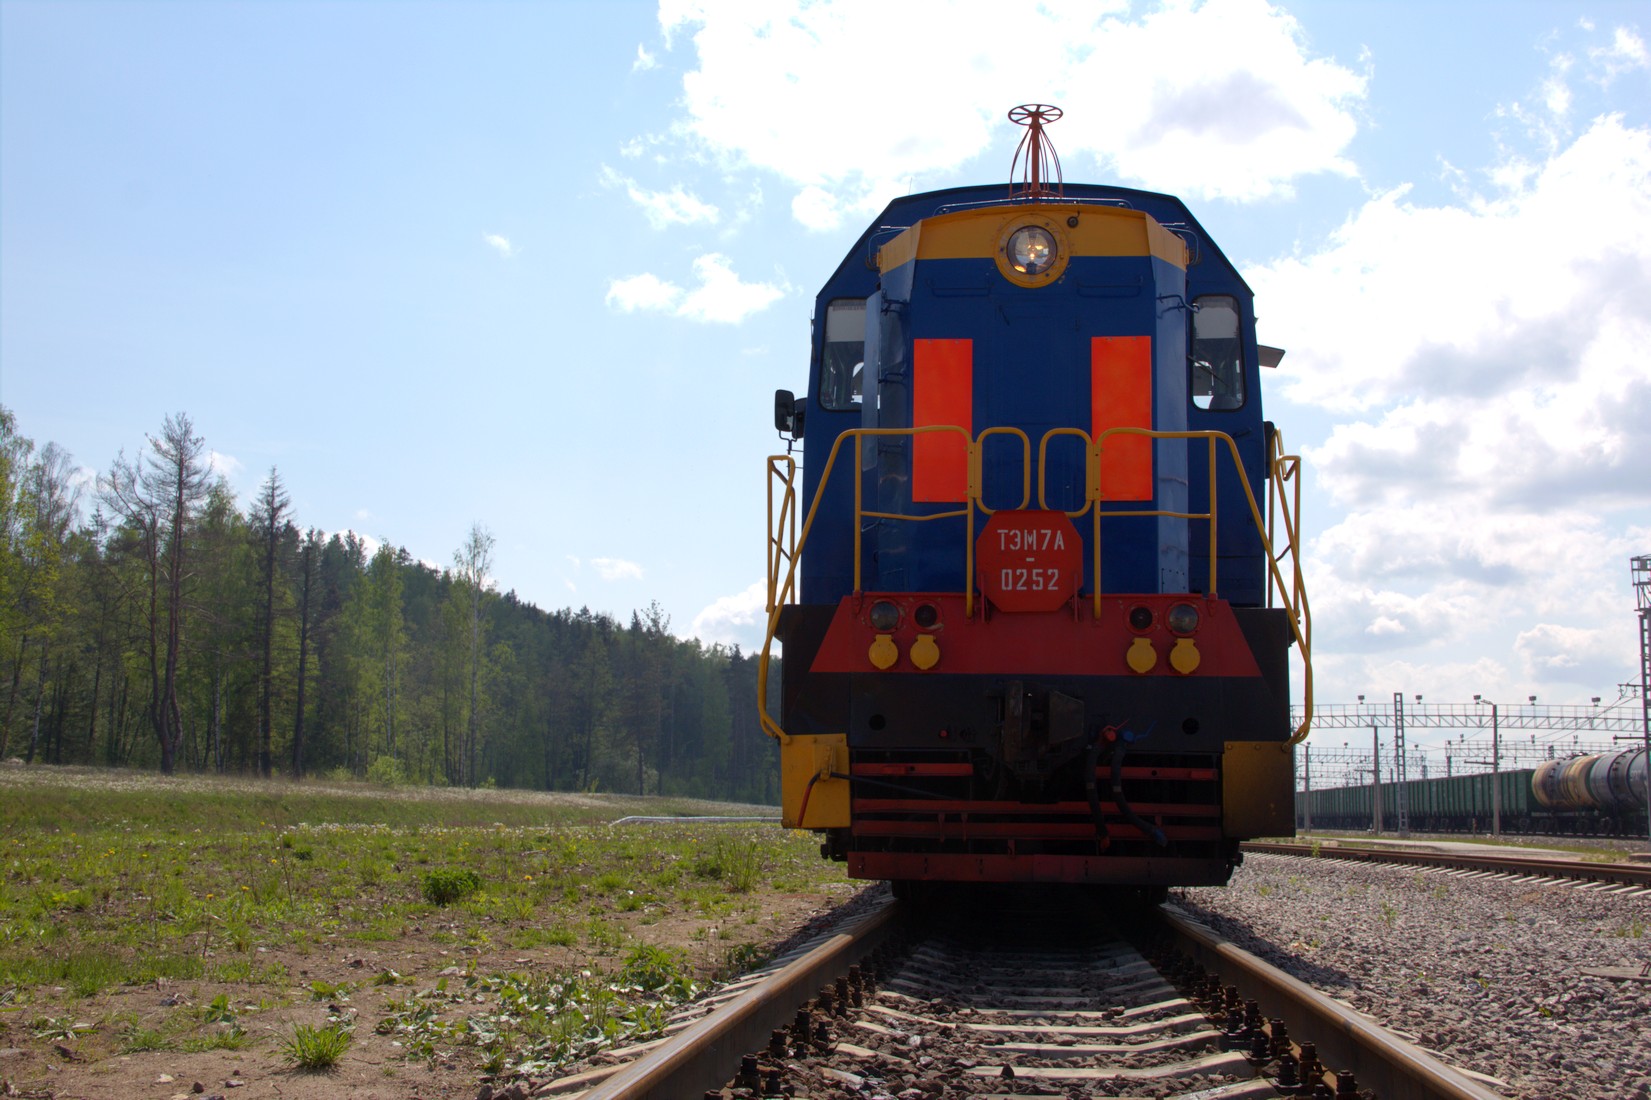 Железнодорожный оператор порта Усть-Луга на 10% сократил время обработки локомотива с помощью нацпроекта